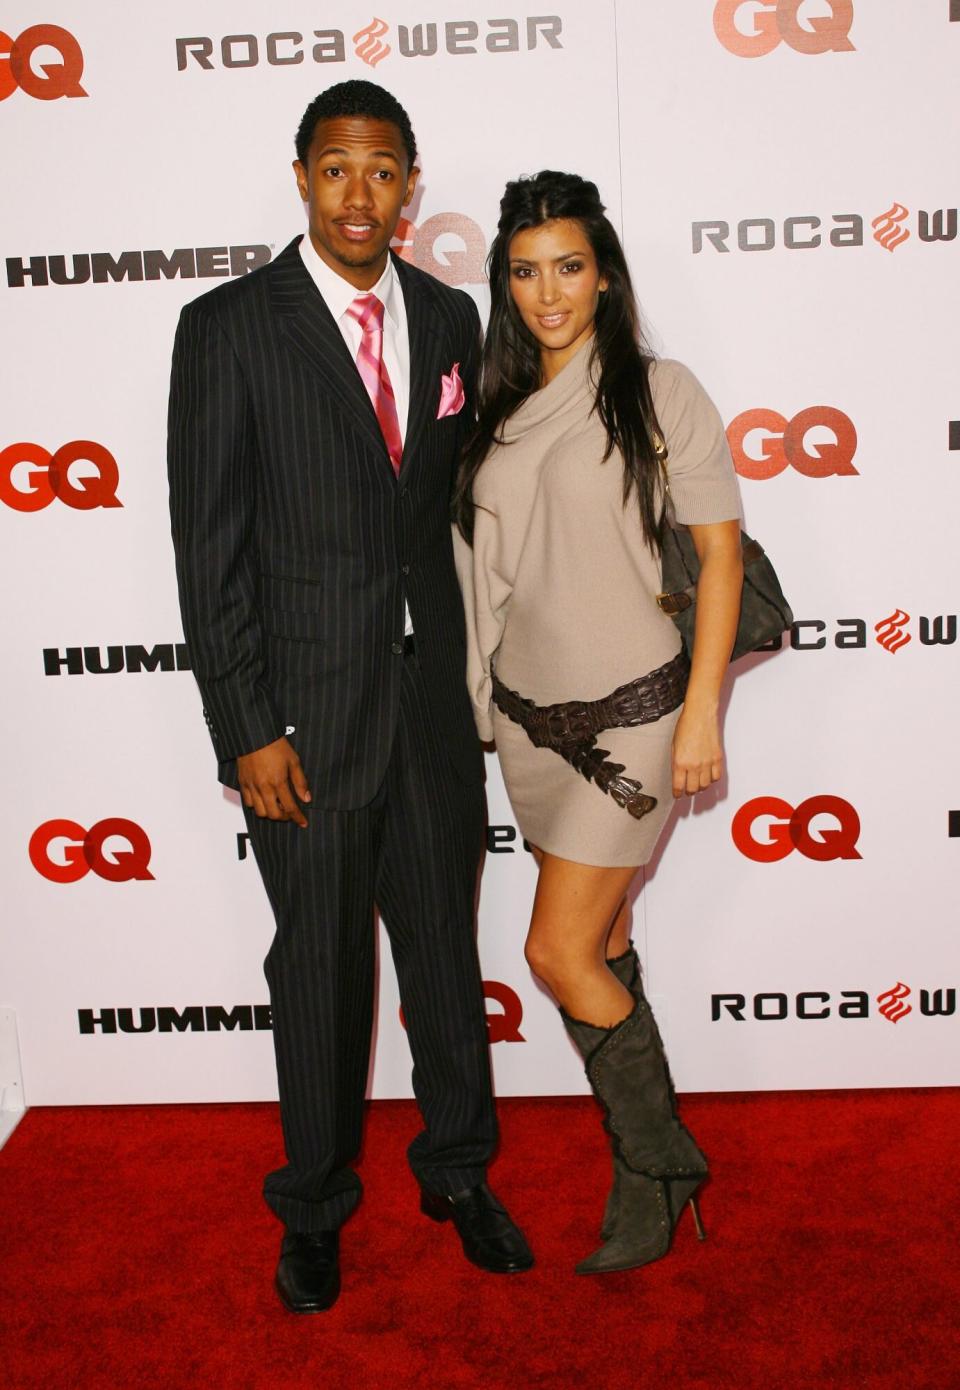 TBT: Kim Kardashian and Nick Cannon